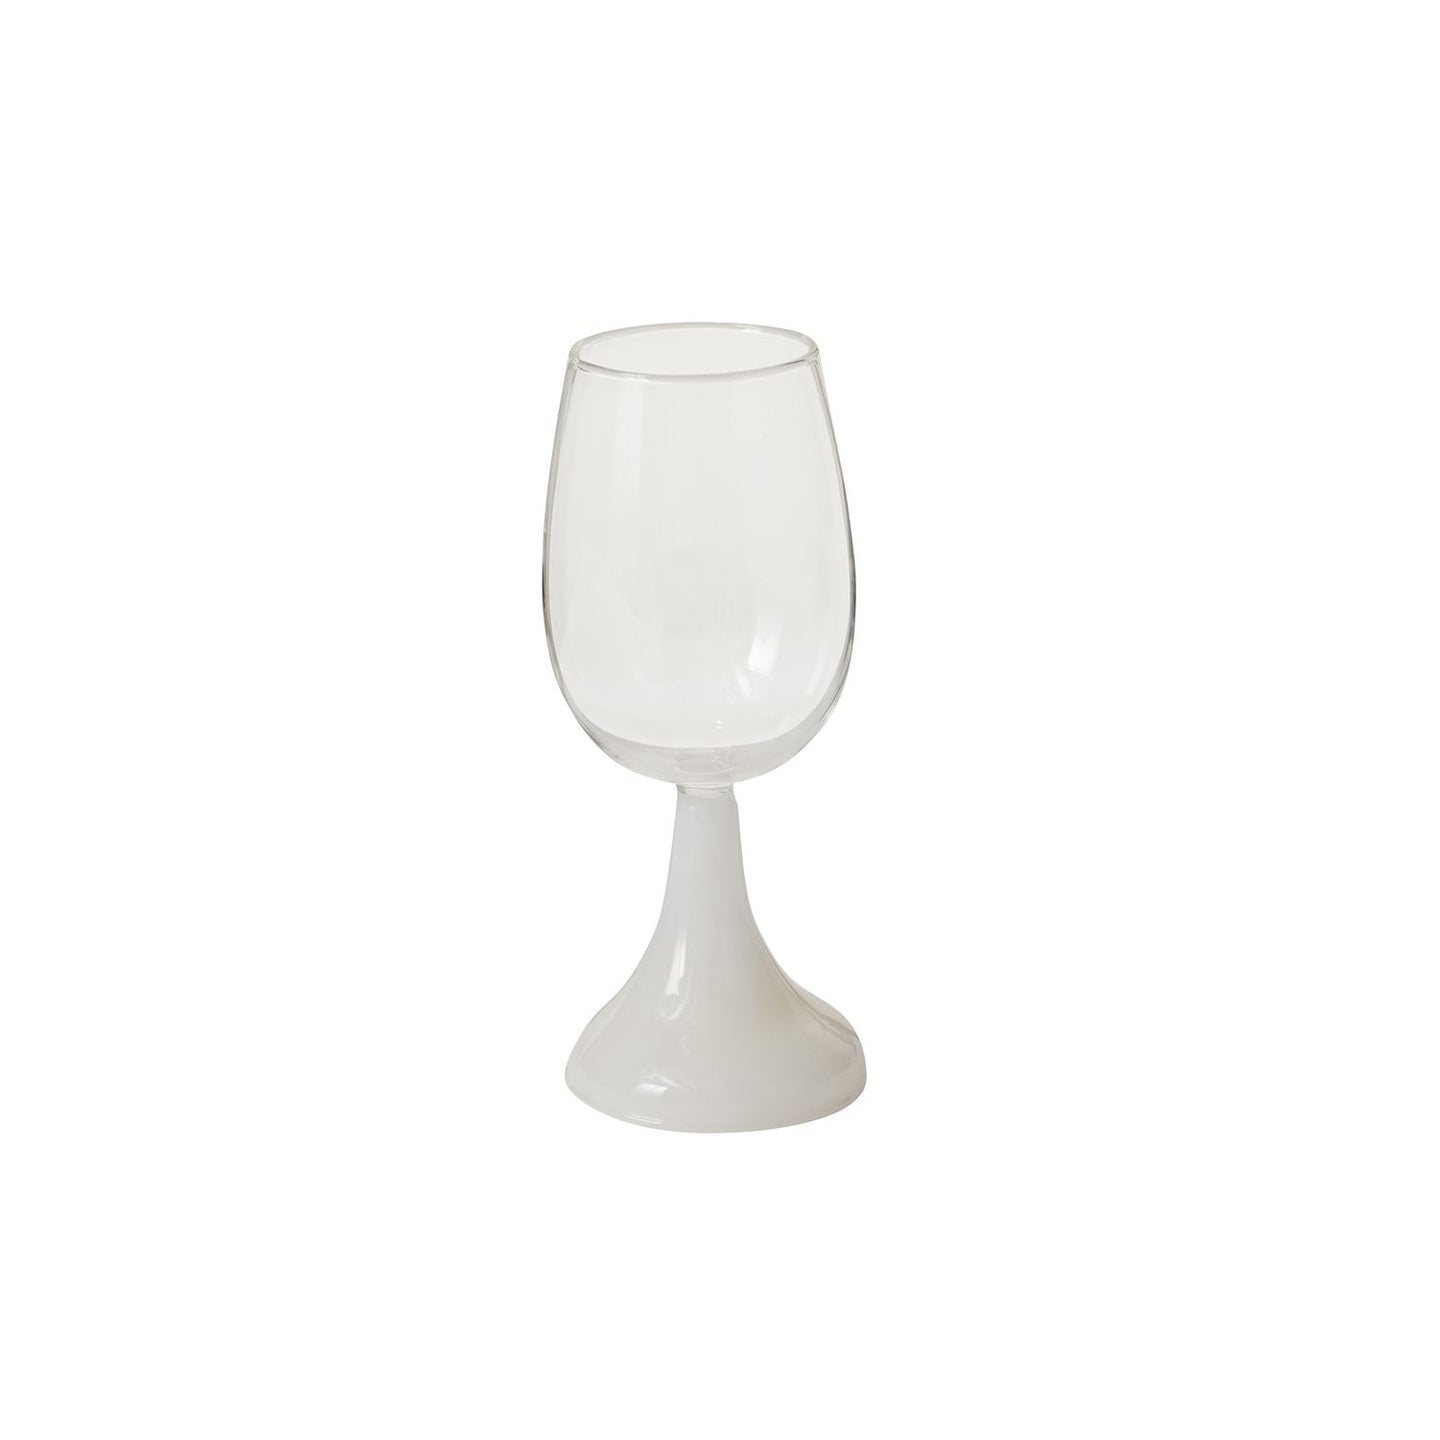 Accent Decor Aurelia Drinking Glass Drinkware 43711.01